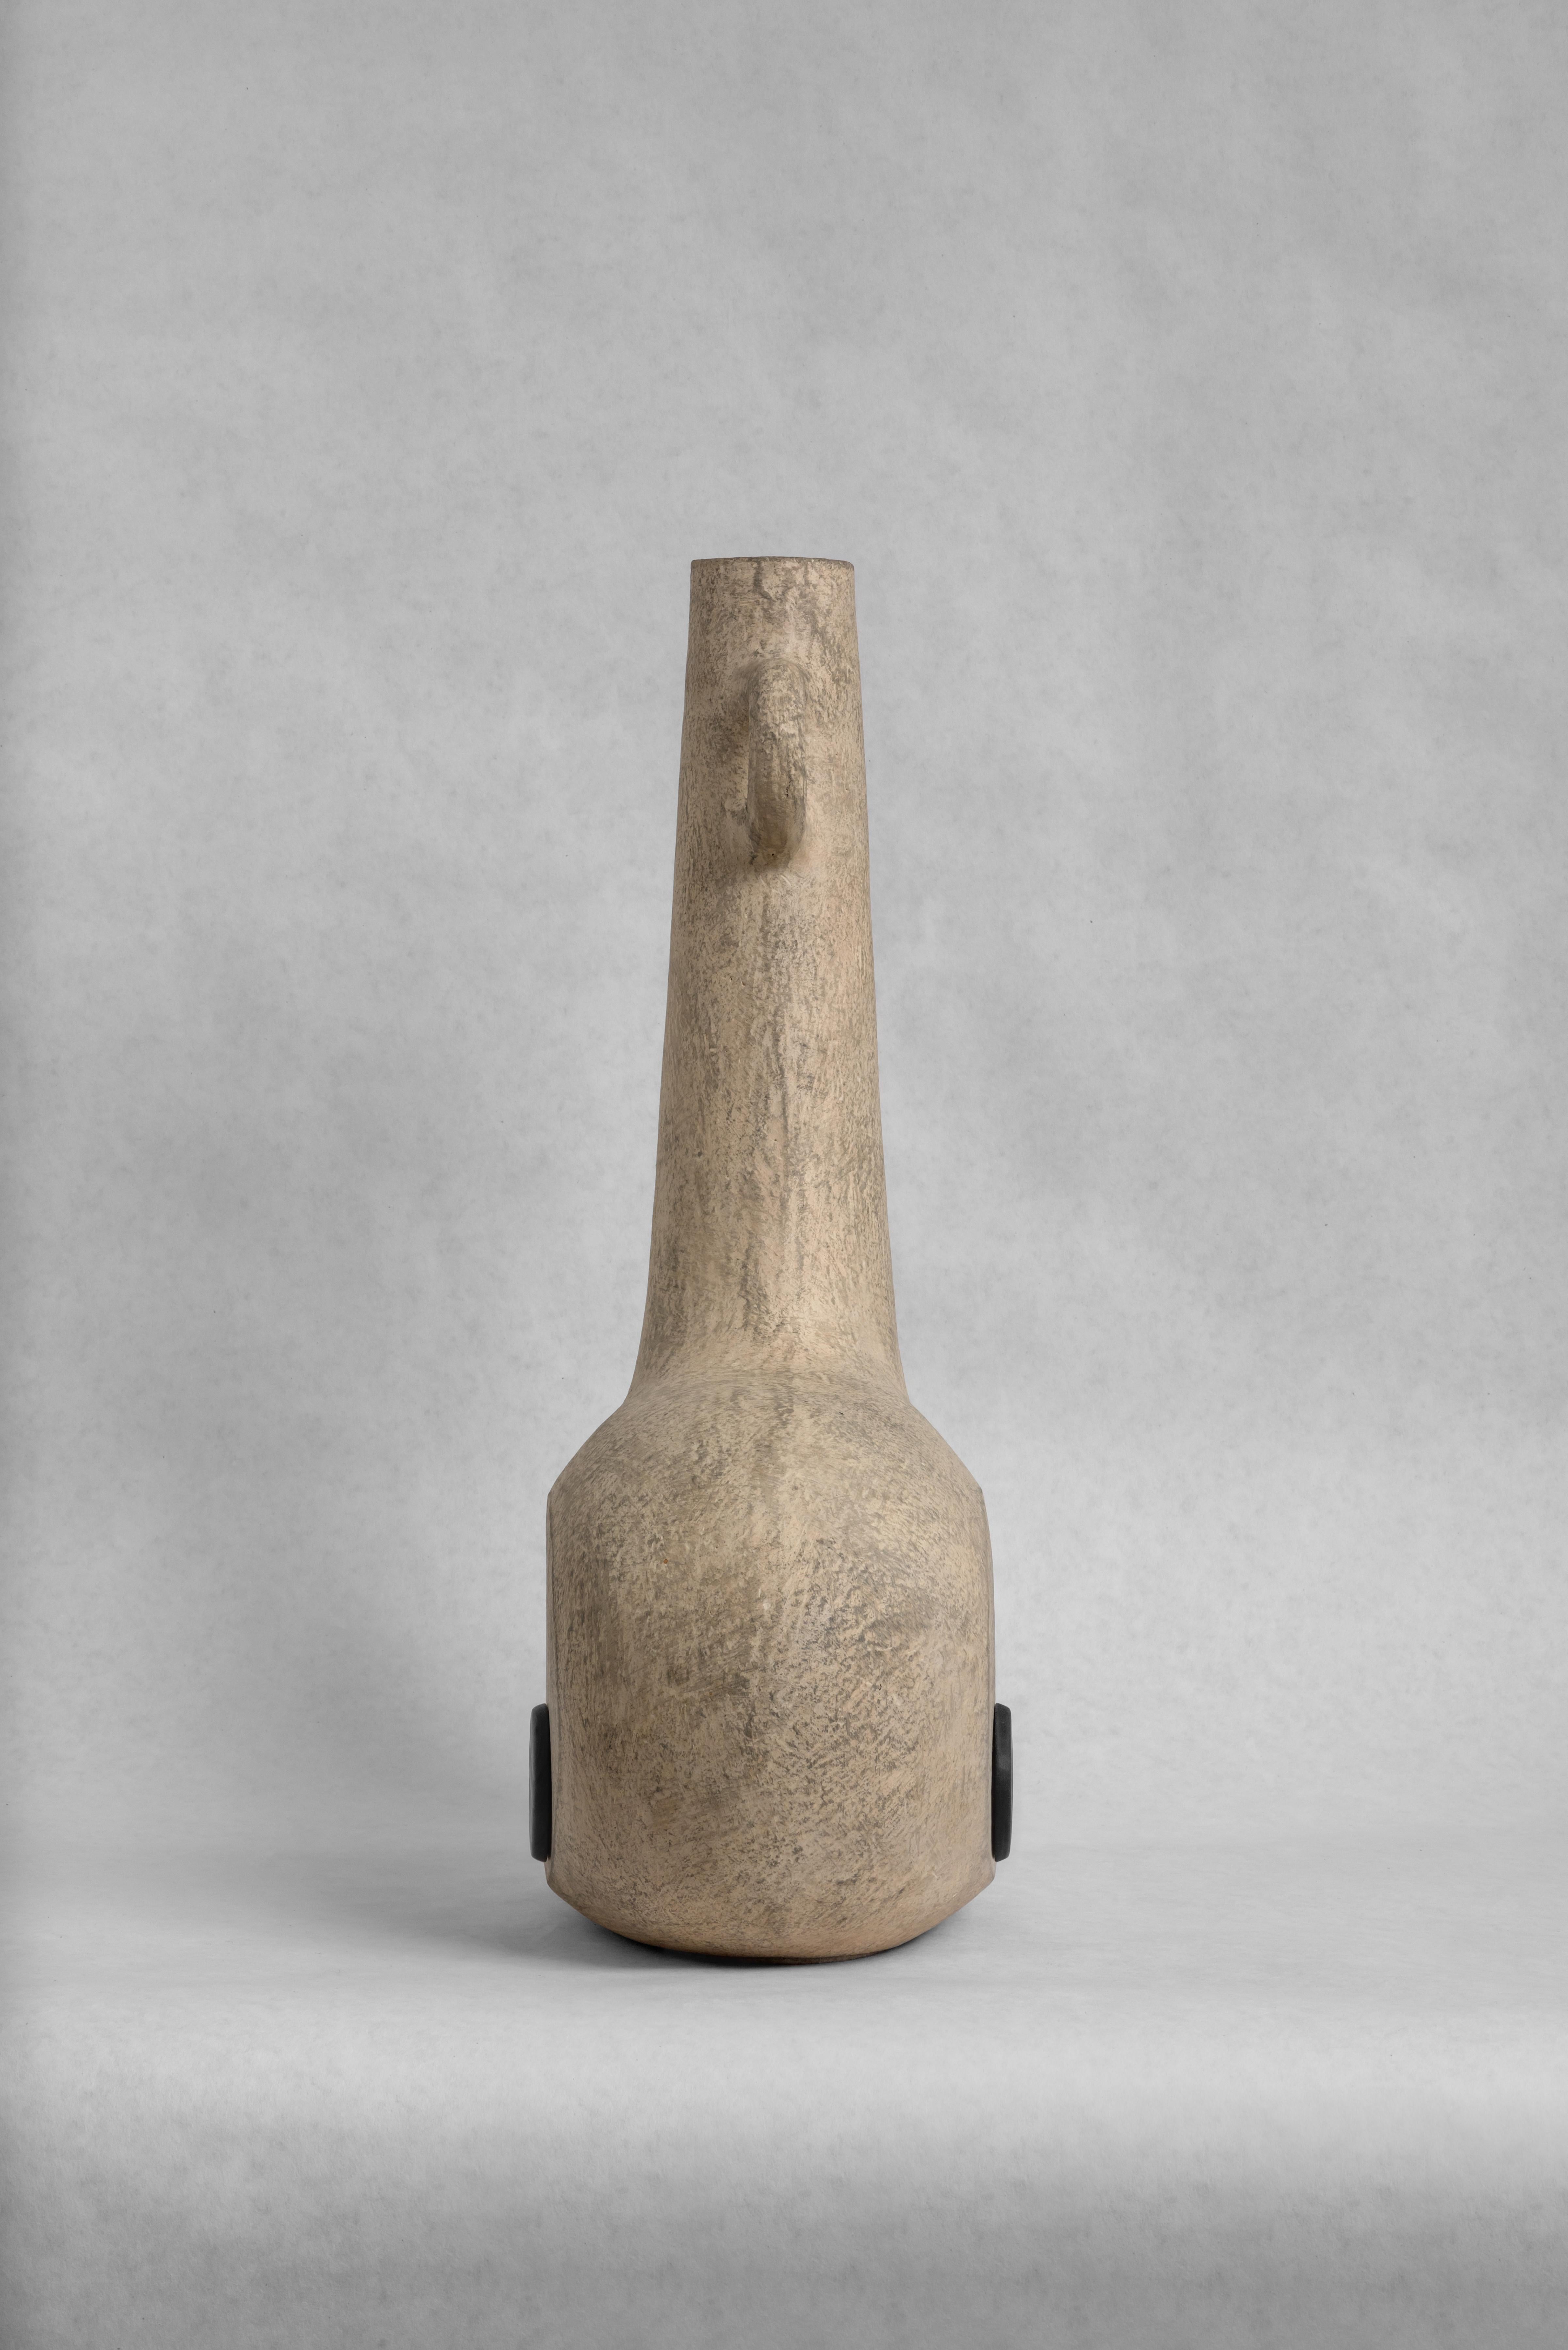 Vase en céramique sculptée de FAINA
Design : Victoriya Yakusha
MATERIAL : Matériau : argile / céramique
Dimensions : 
Bigli : 31,5 x 15 x H 50 cm
(également disponible en lot de deux)


Conçus dans le style du minimalisme ethnique, les articles de